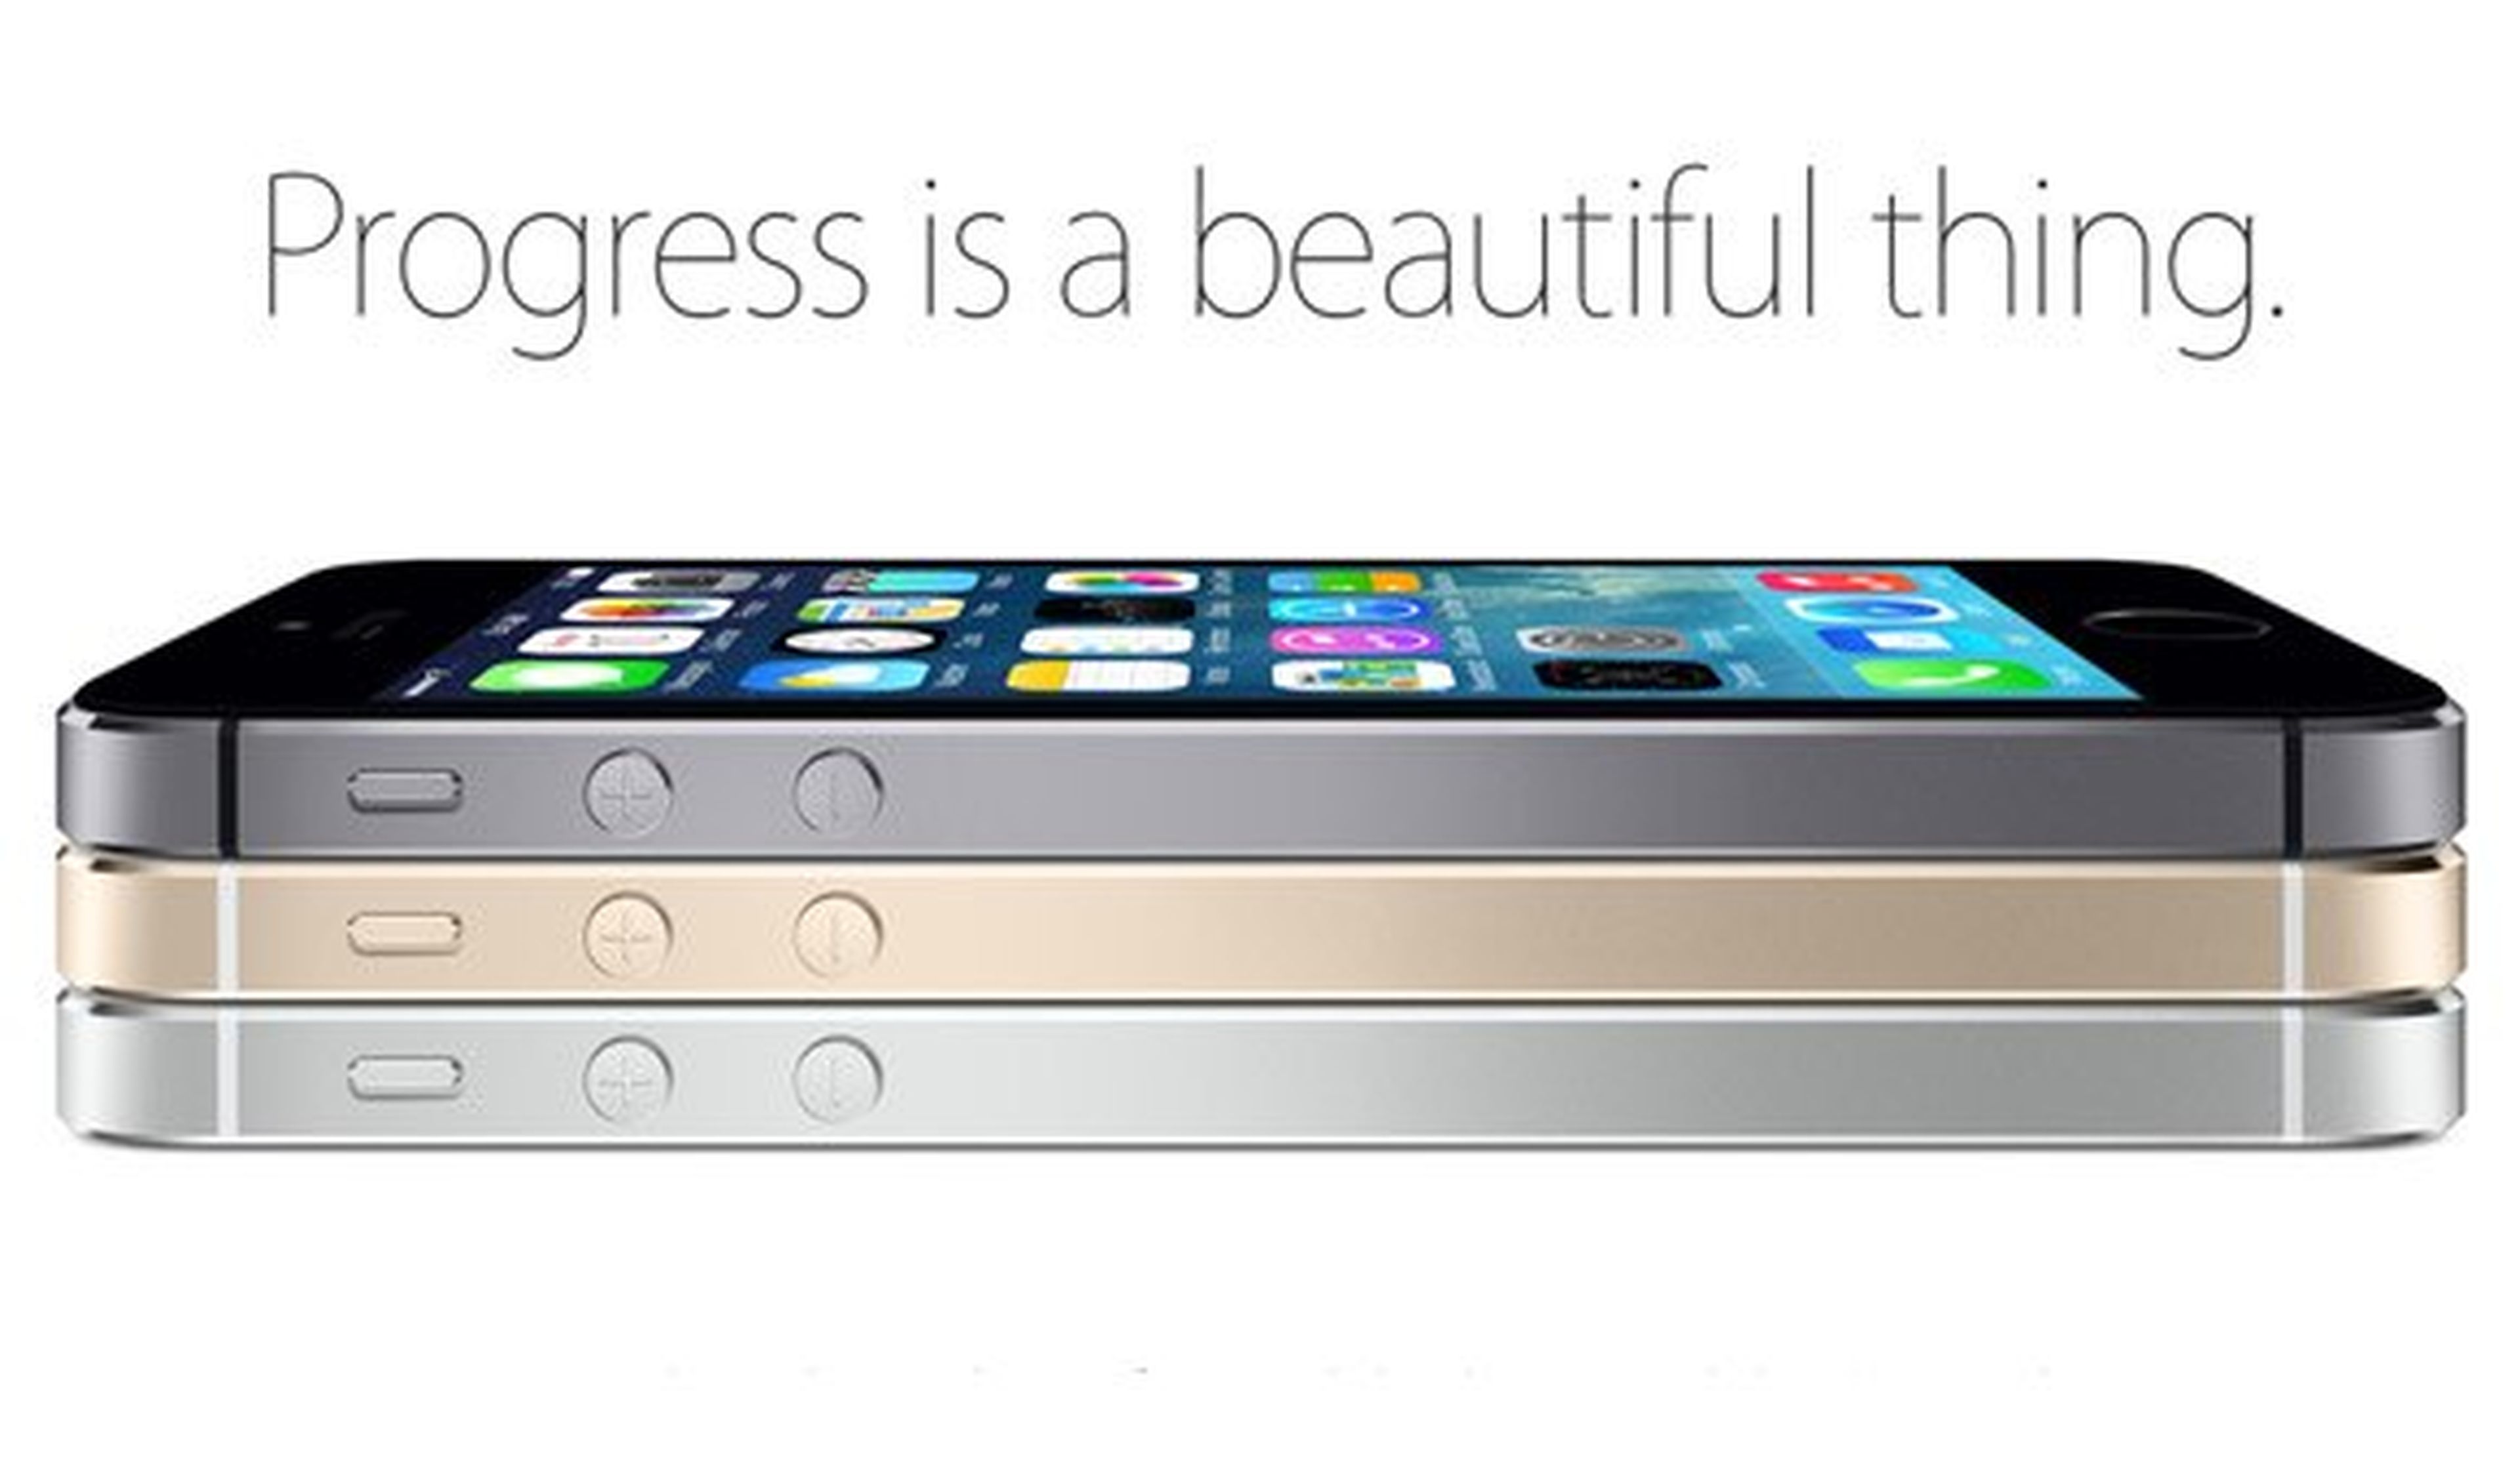 El nuevo iPhone 6 tendrá pantallas más grandes de 4.5 " y 5"